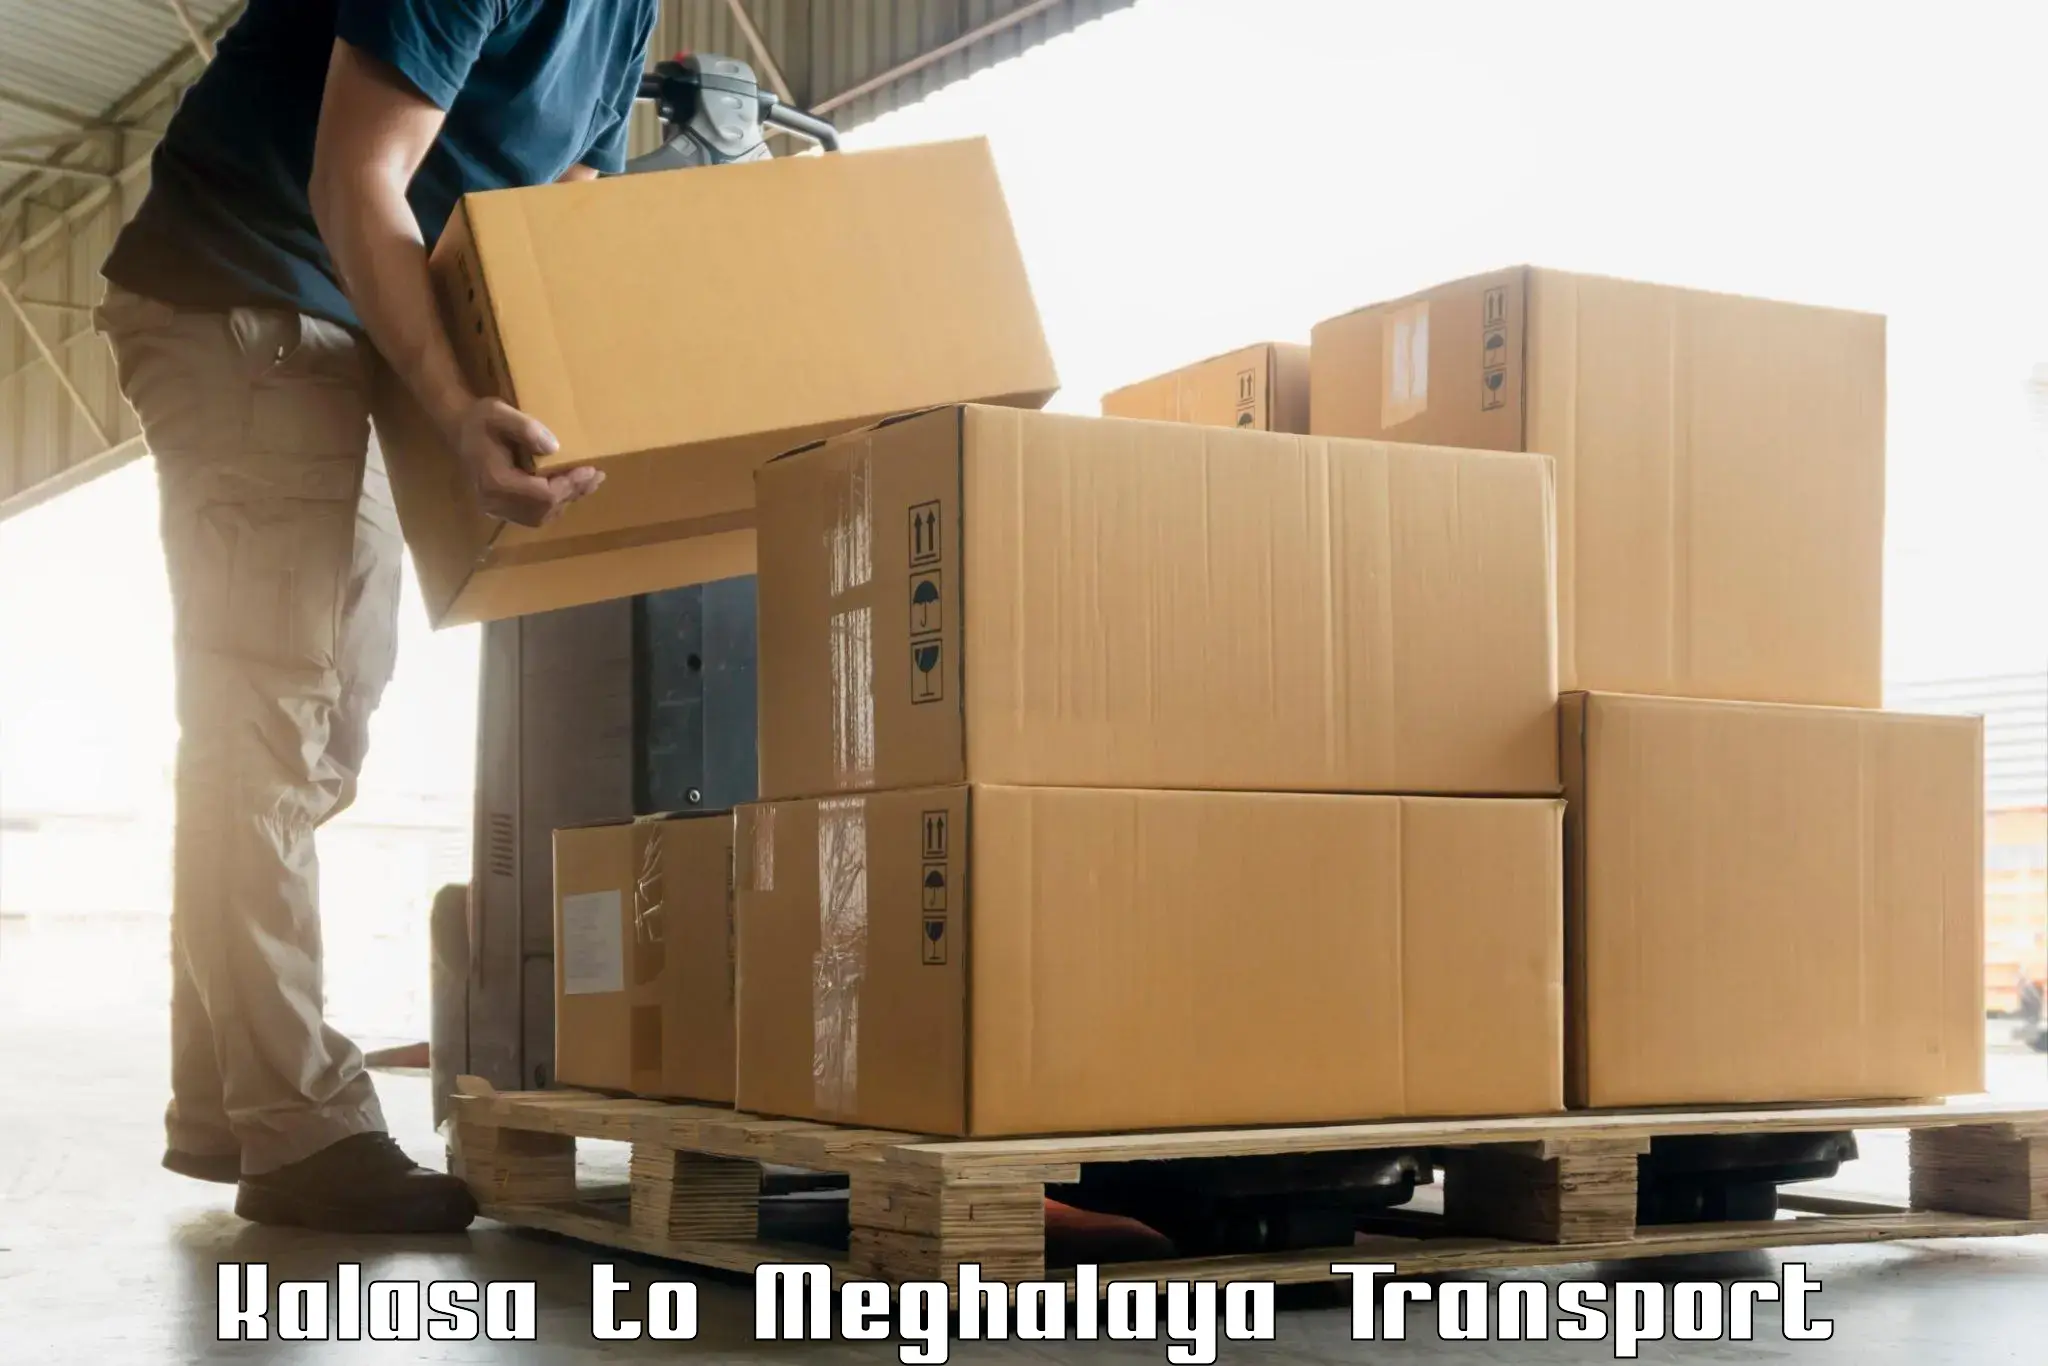 Air freight transport services Kalasa to NIT Meghalaya